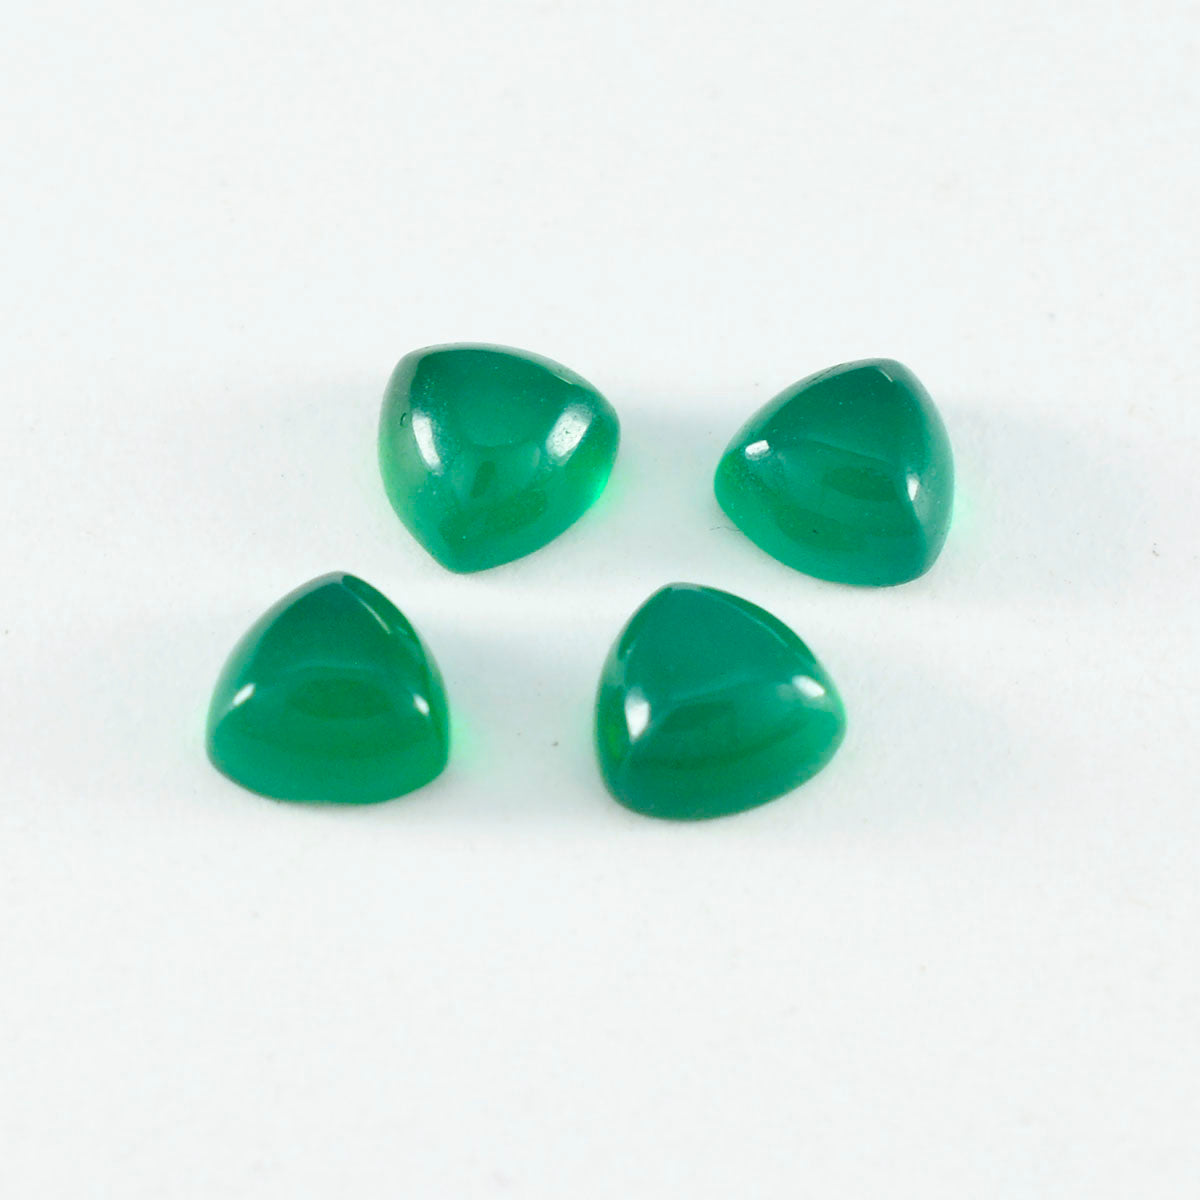 Riyogems 1PC Green Onyx Cabochon 10x10 mm Trillion Shape wonderful Quality Loose Gems